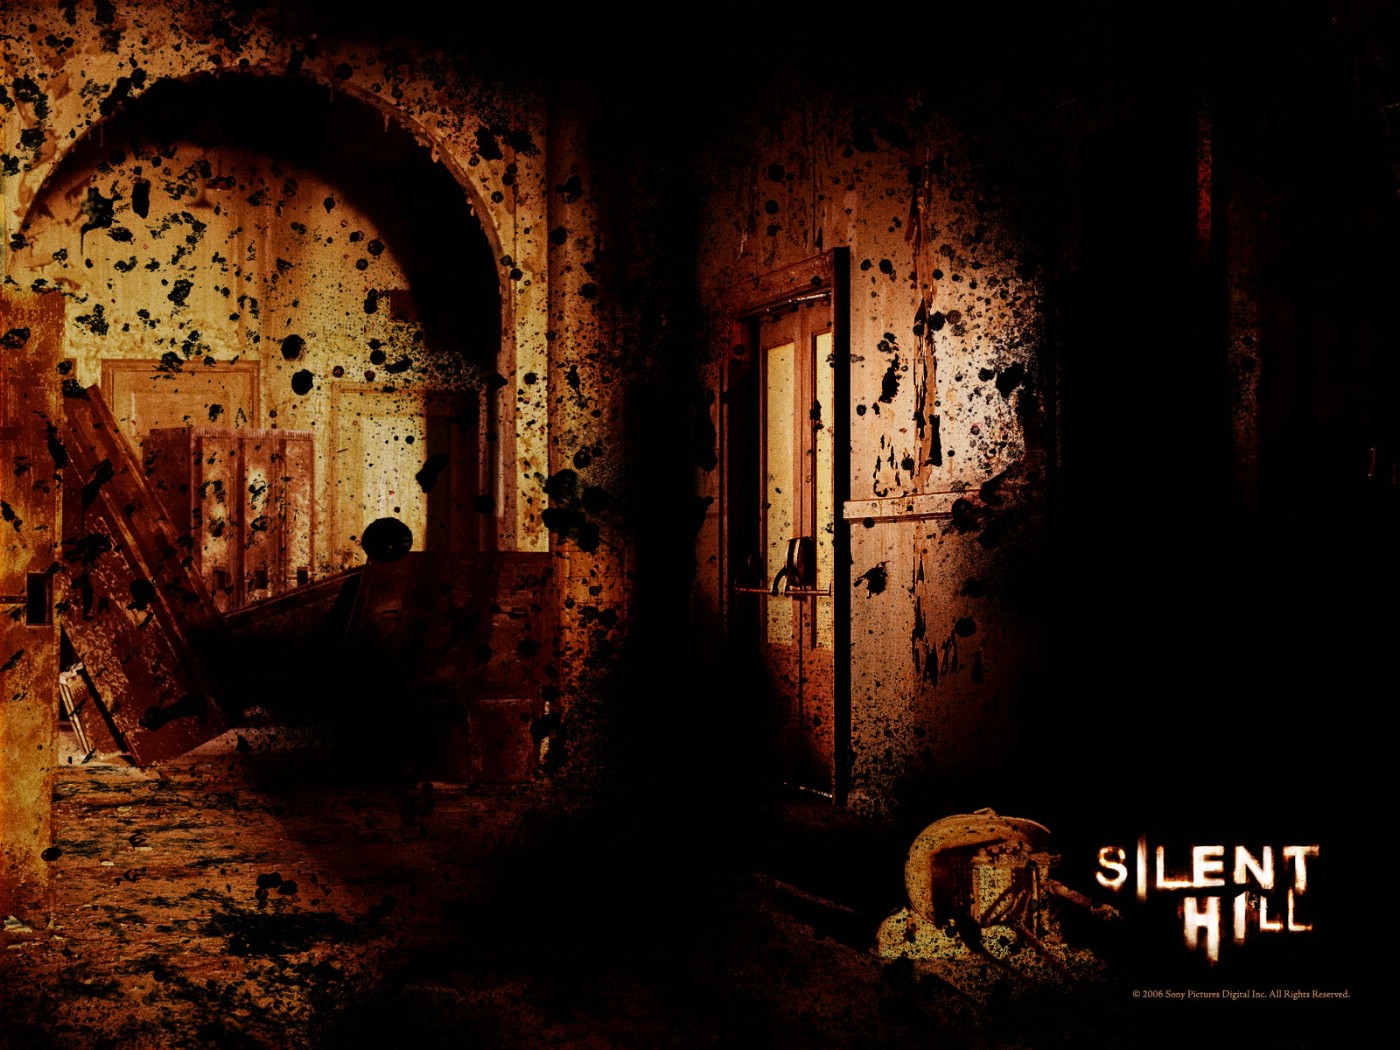 壁纸1400x1050 寂静岭 电影壁纸 Movie wallpaper Silent Hill 2006壁纸 恐怖电影《寂静岭 Silent Hill》壁纸 恐怖电影《寂静岭 Silent Hill》图片 恐怖电影《寂静岭 Silent Hill》素材 影视壁纸 影视图库 影视图片素材桌面壁纸